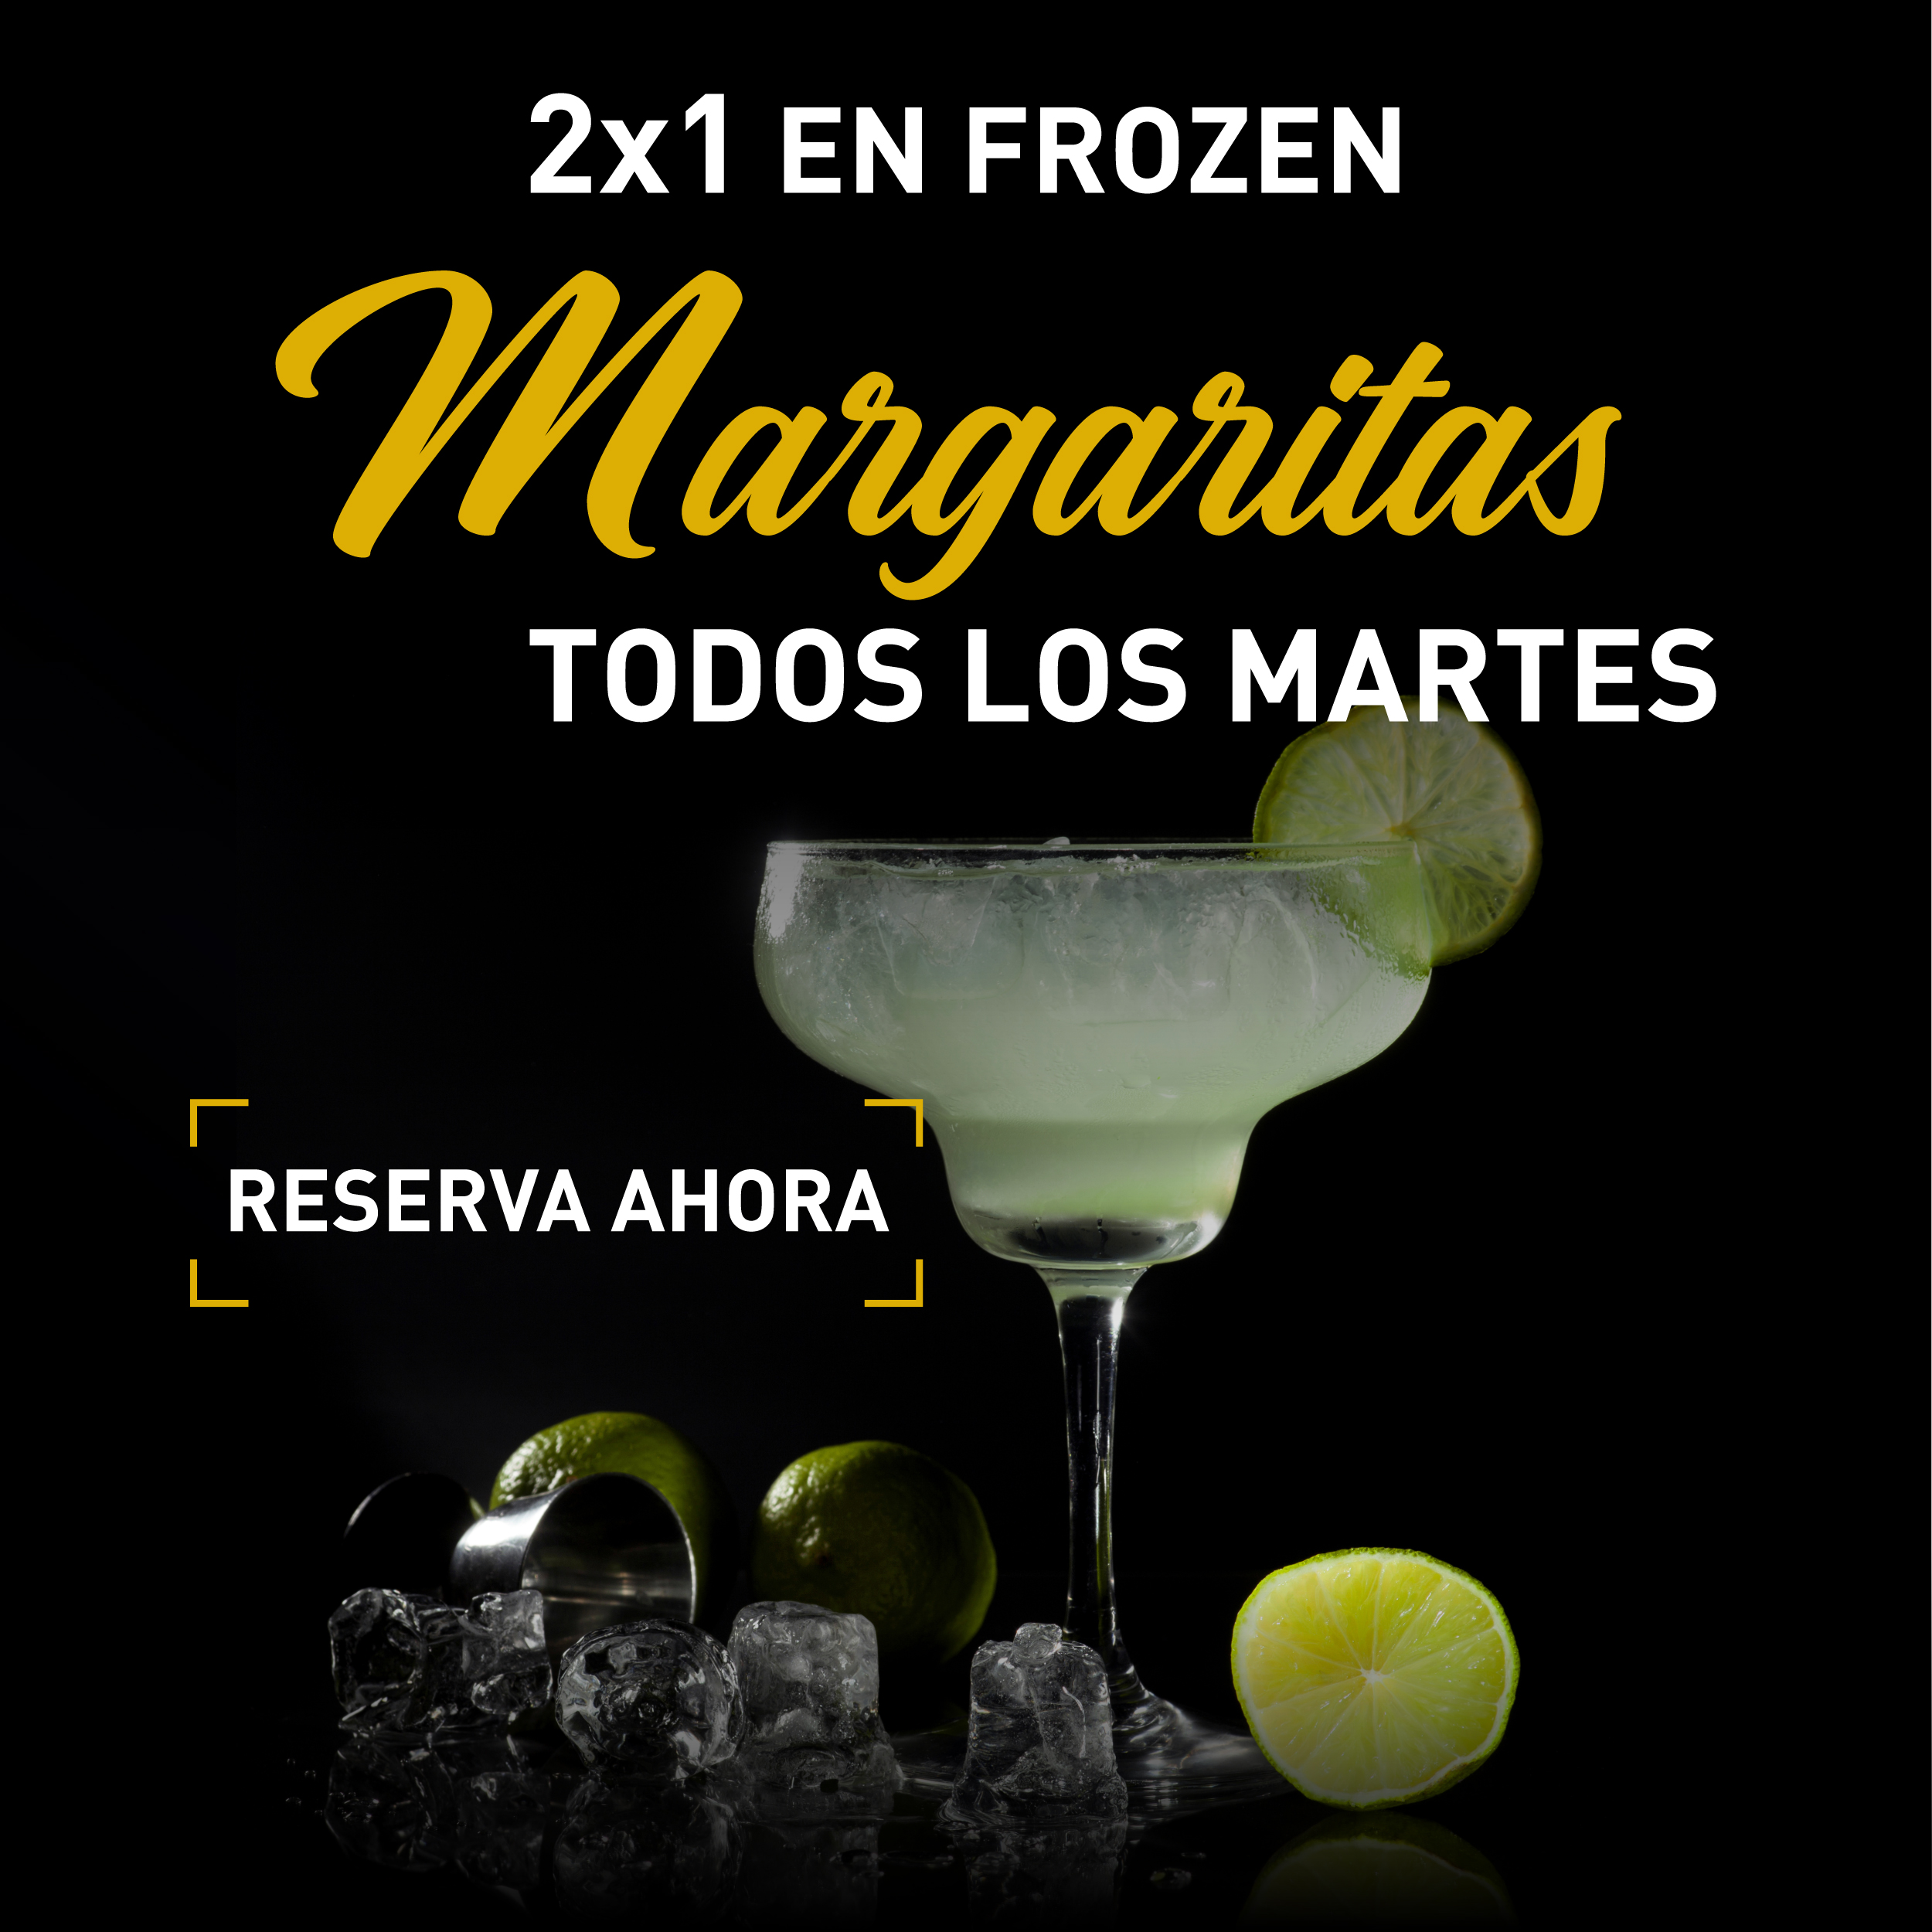 Margarita 2 X 1 todos los martes